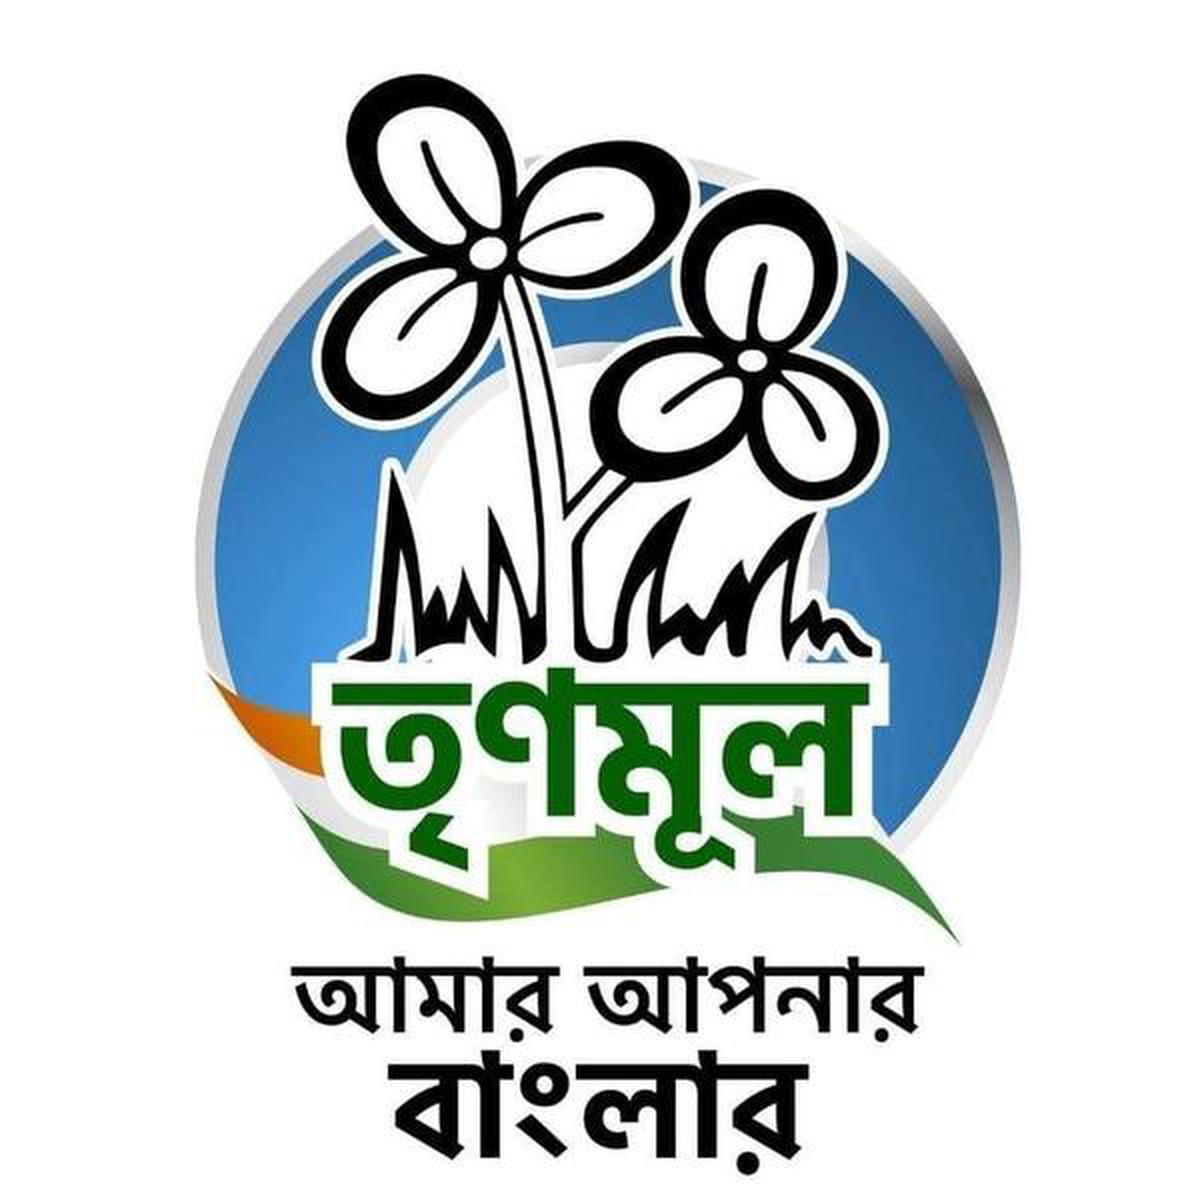 lok sabha logo